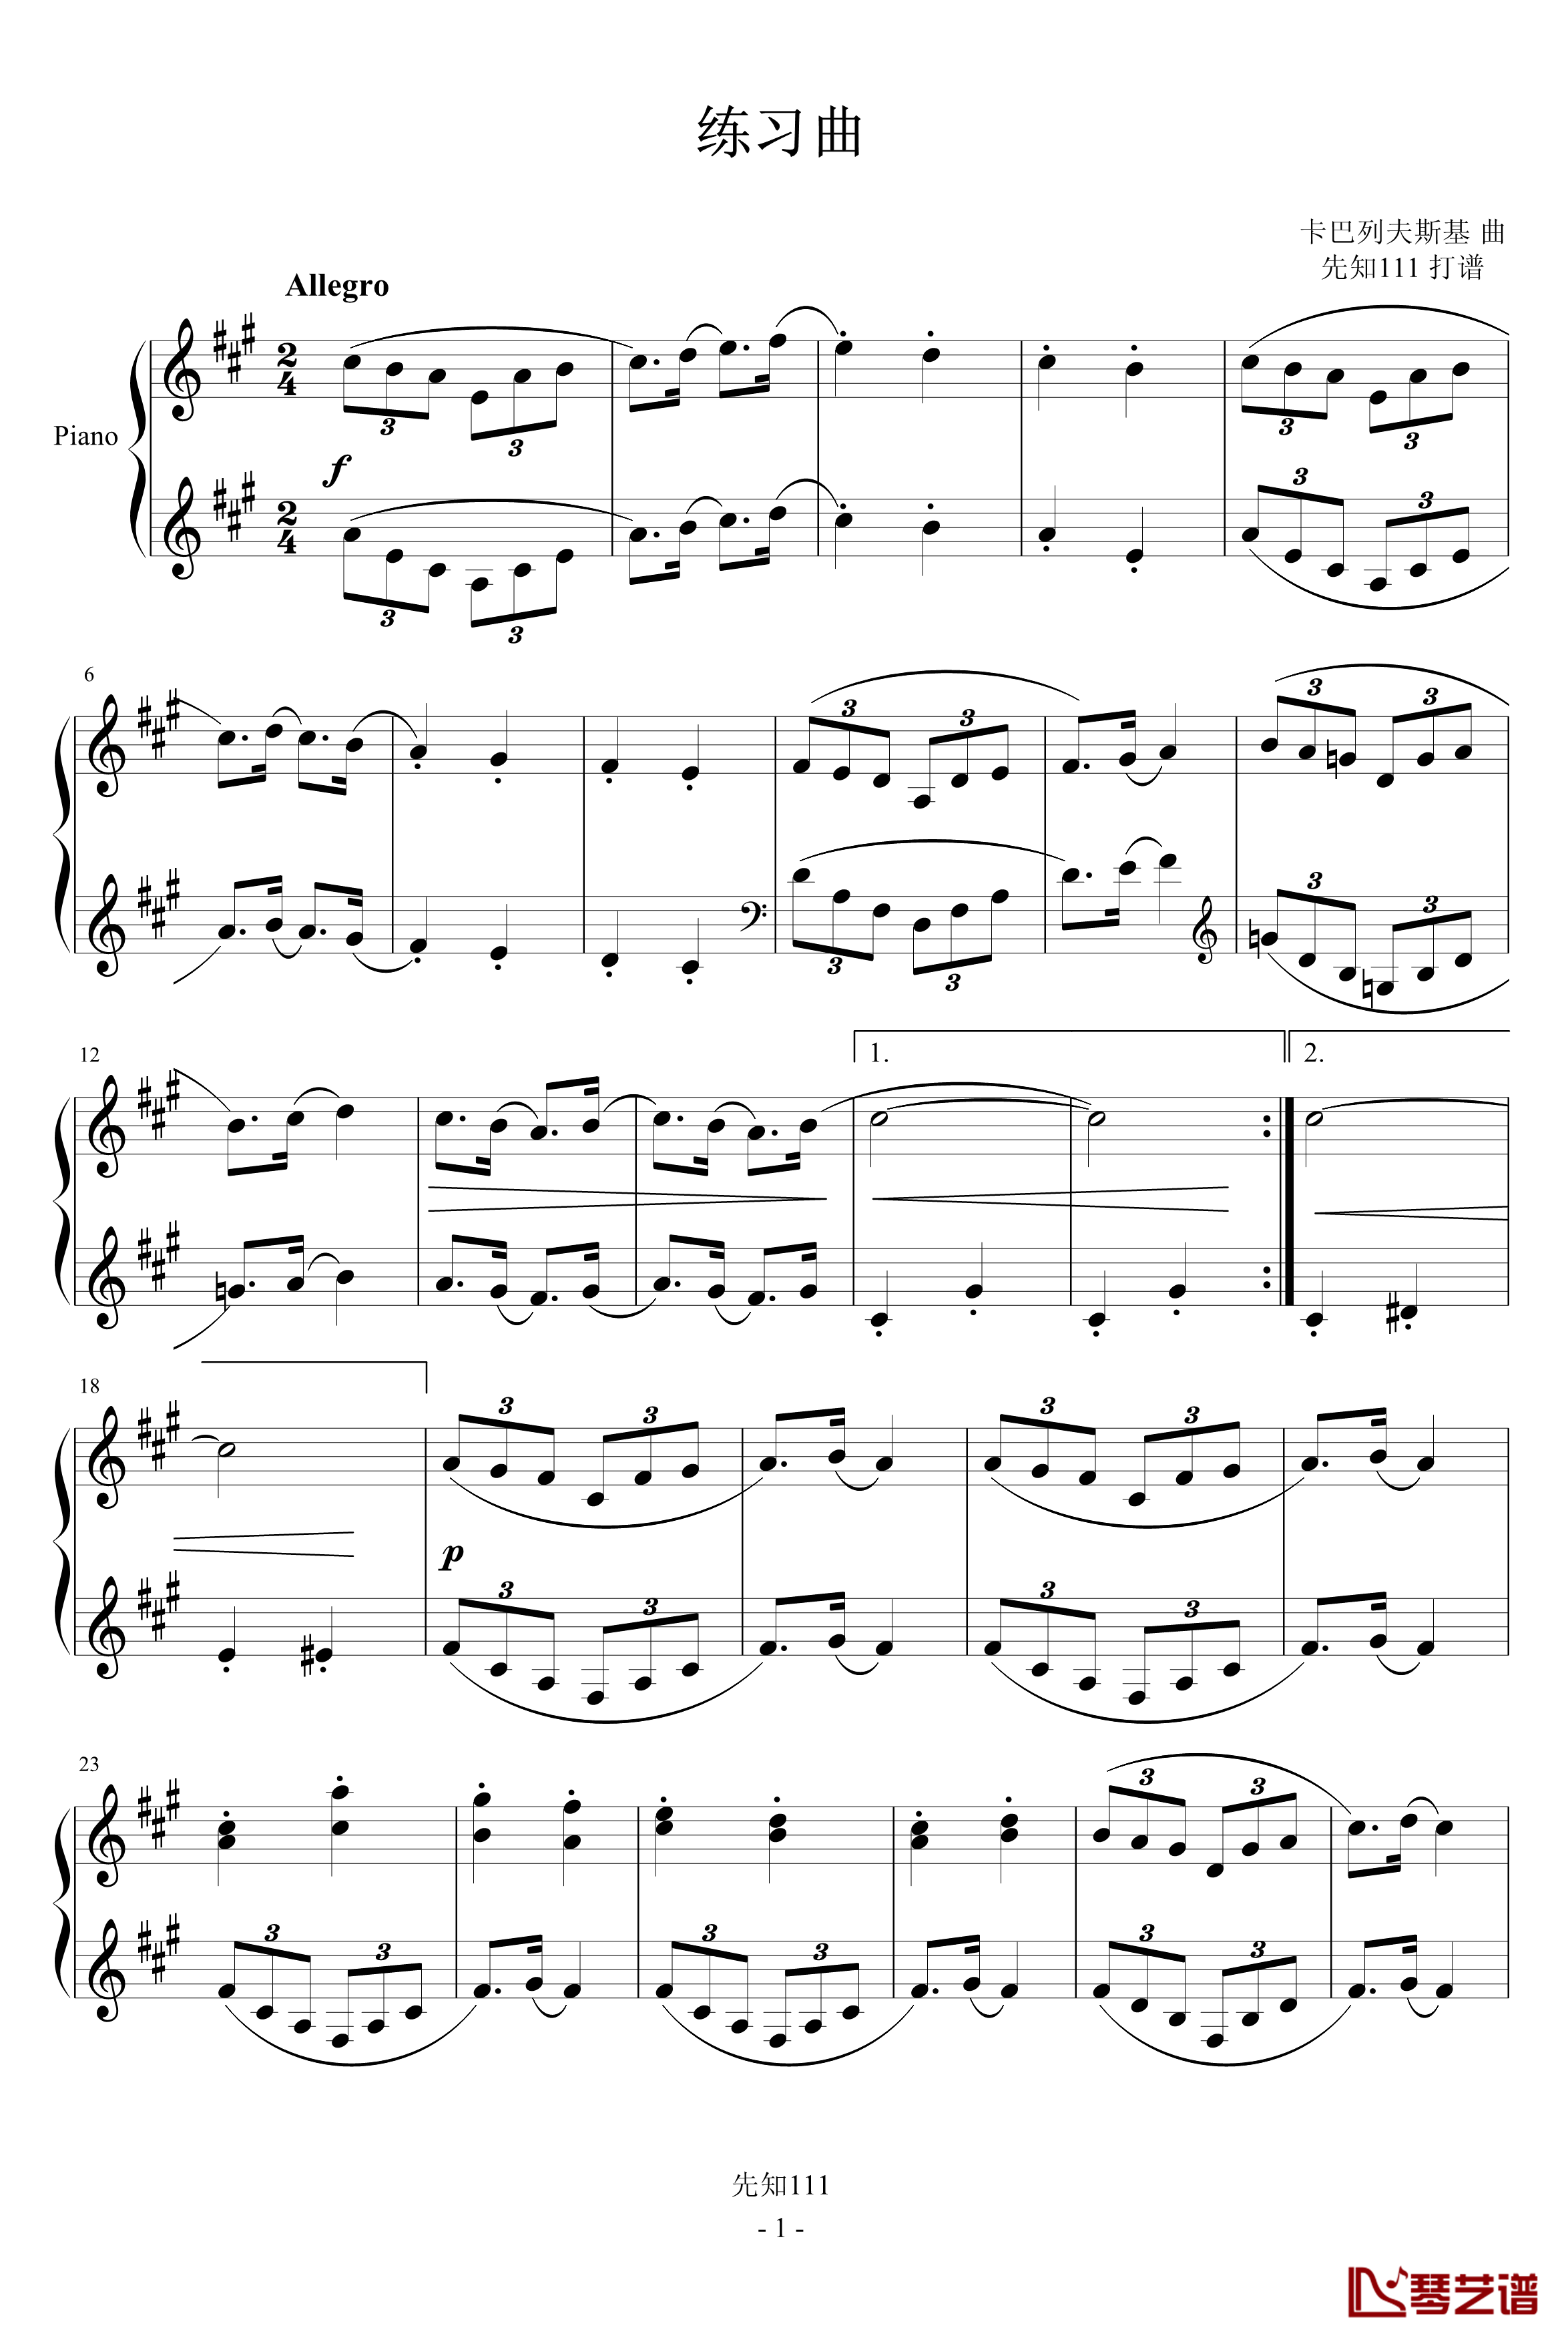 卡巴列夫斯基-练习曲钢琴谱-卡巴列伕斯基